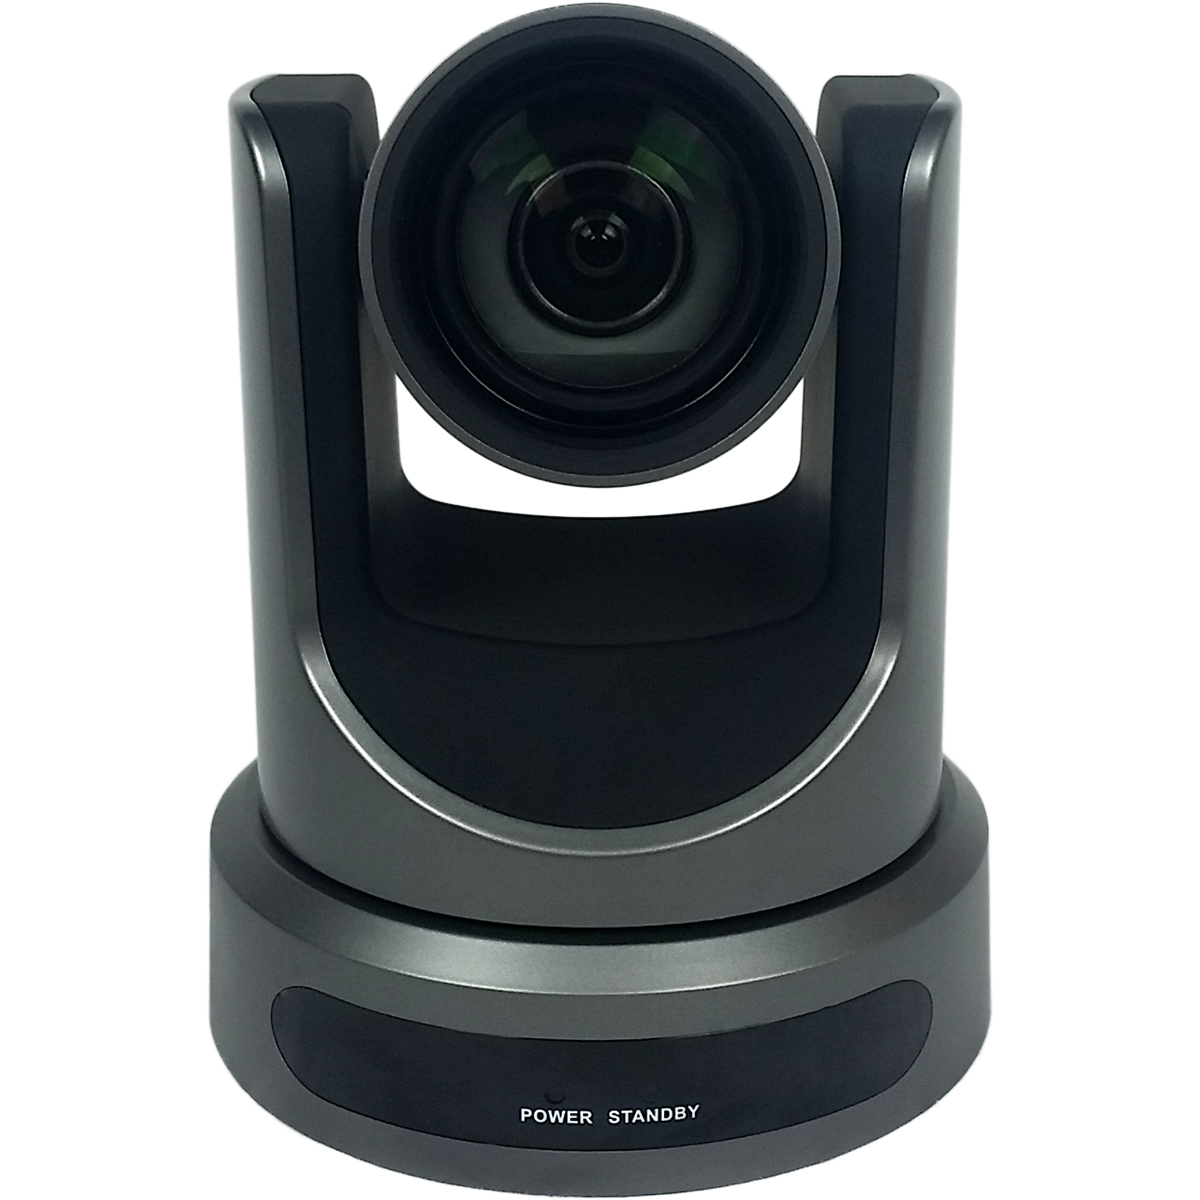 PTZOptics 12x-USB Video Conferencing Camera (Gray)